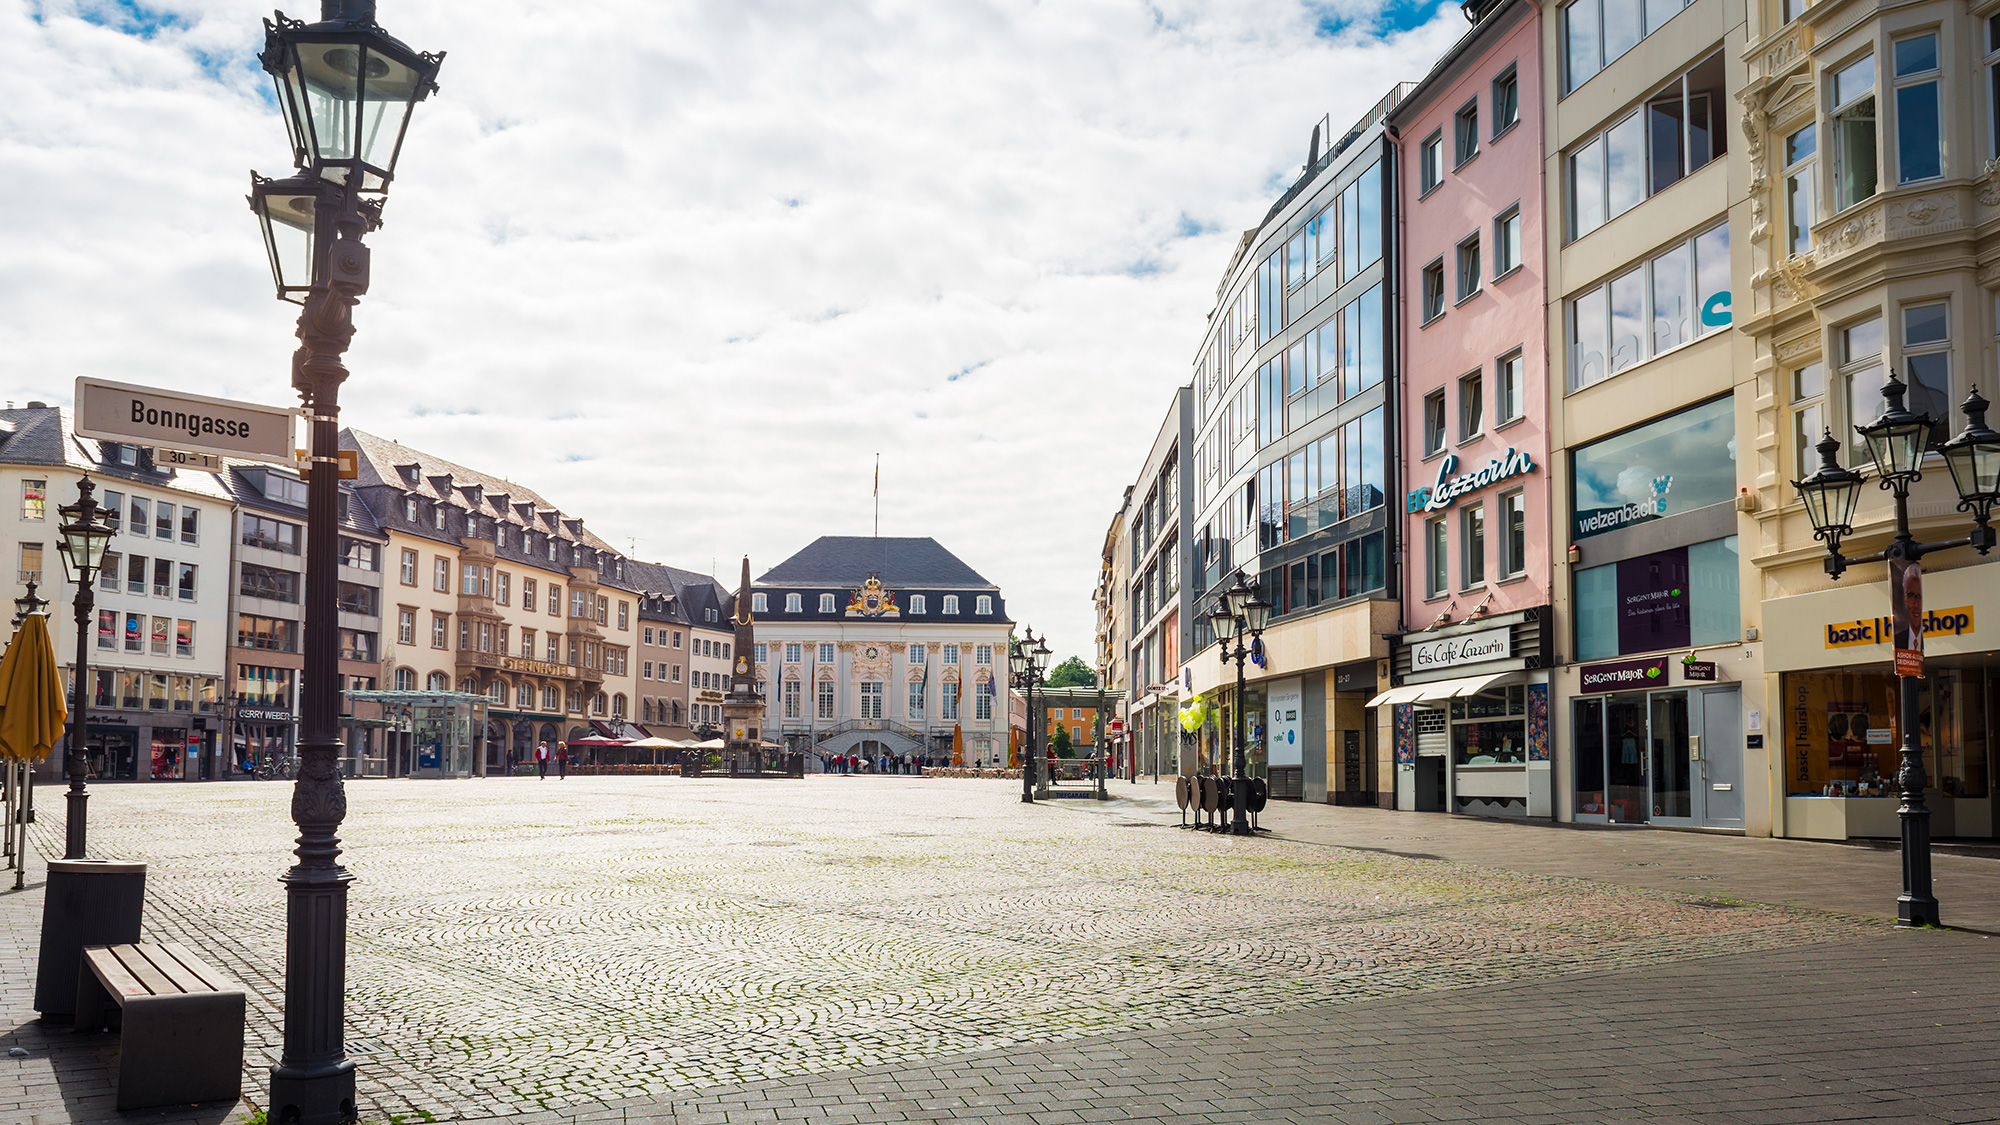 Der Marktplatz in Bonn, ganz in der Nähe des prizeotel Bonn-City 